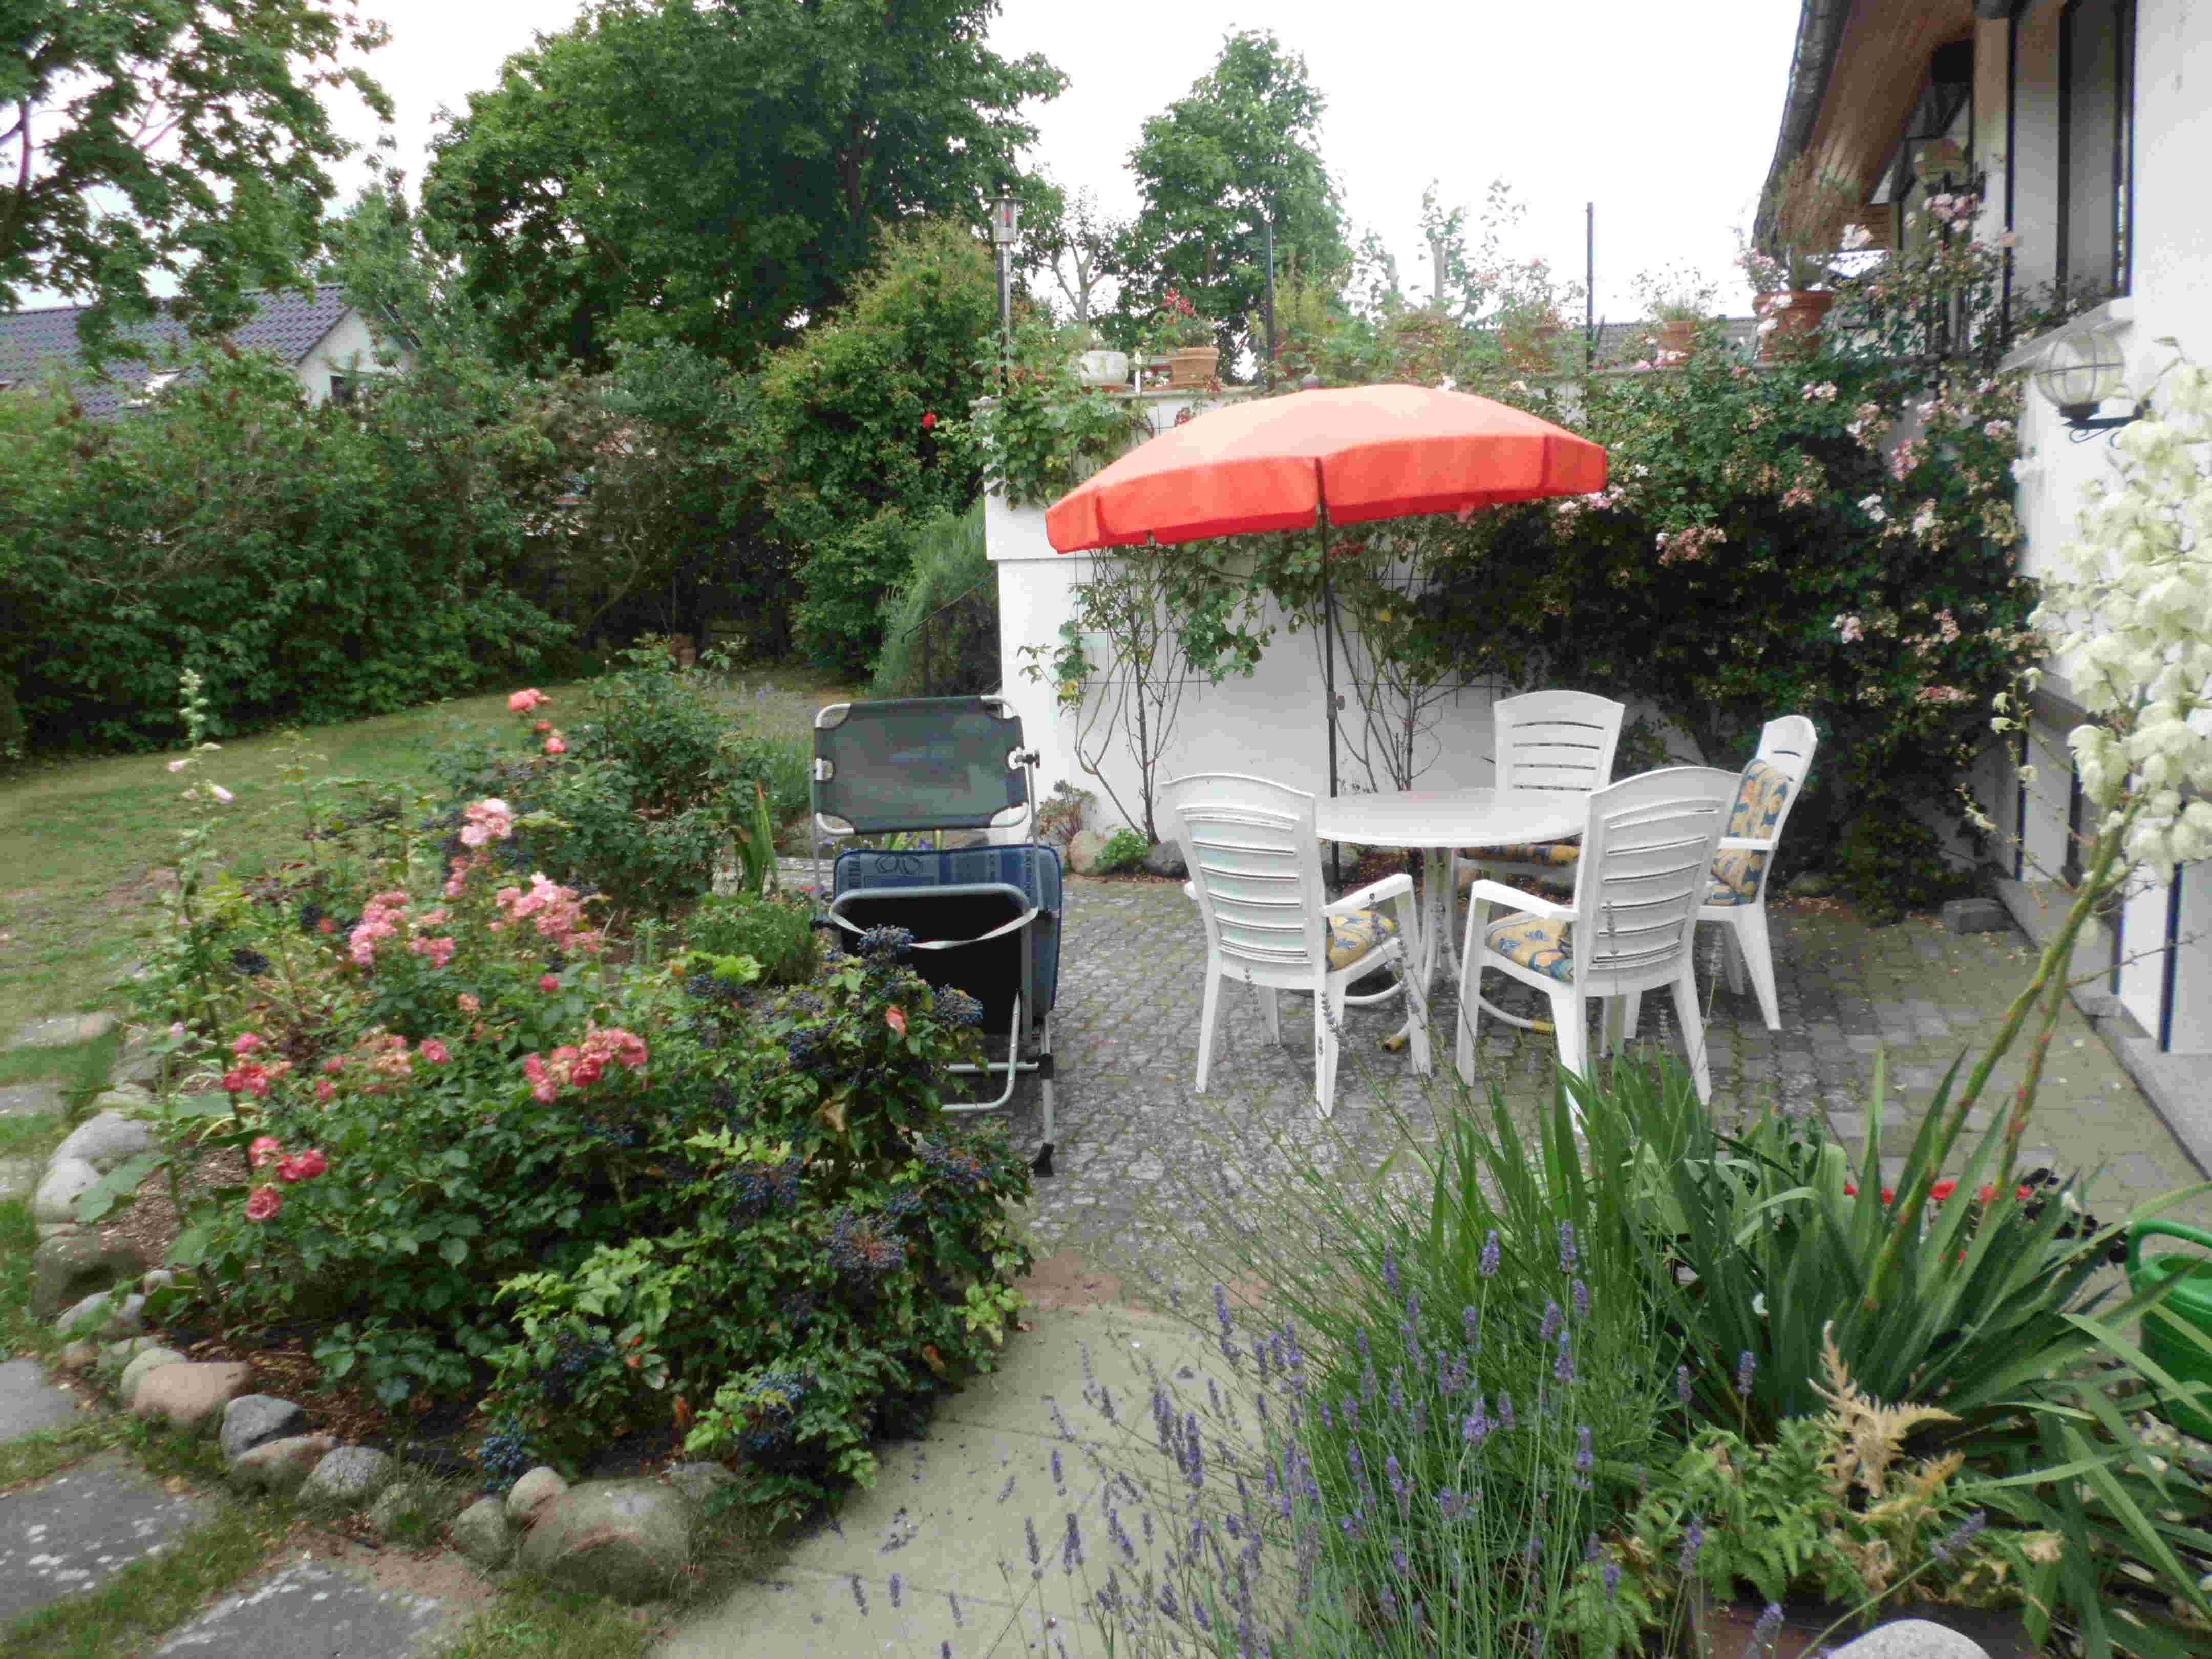 Von Rosen umwachsene Terrasse der Ferienwohnung mit Gartenmöbeln. Für den Radurlaub können die Fahrräder im Raum unterhalb der oberen Terrasse sicher abgestellt werden.